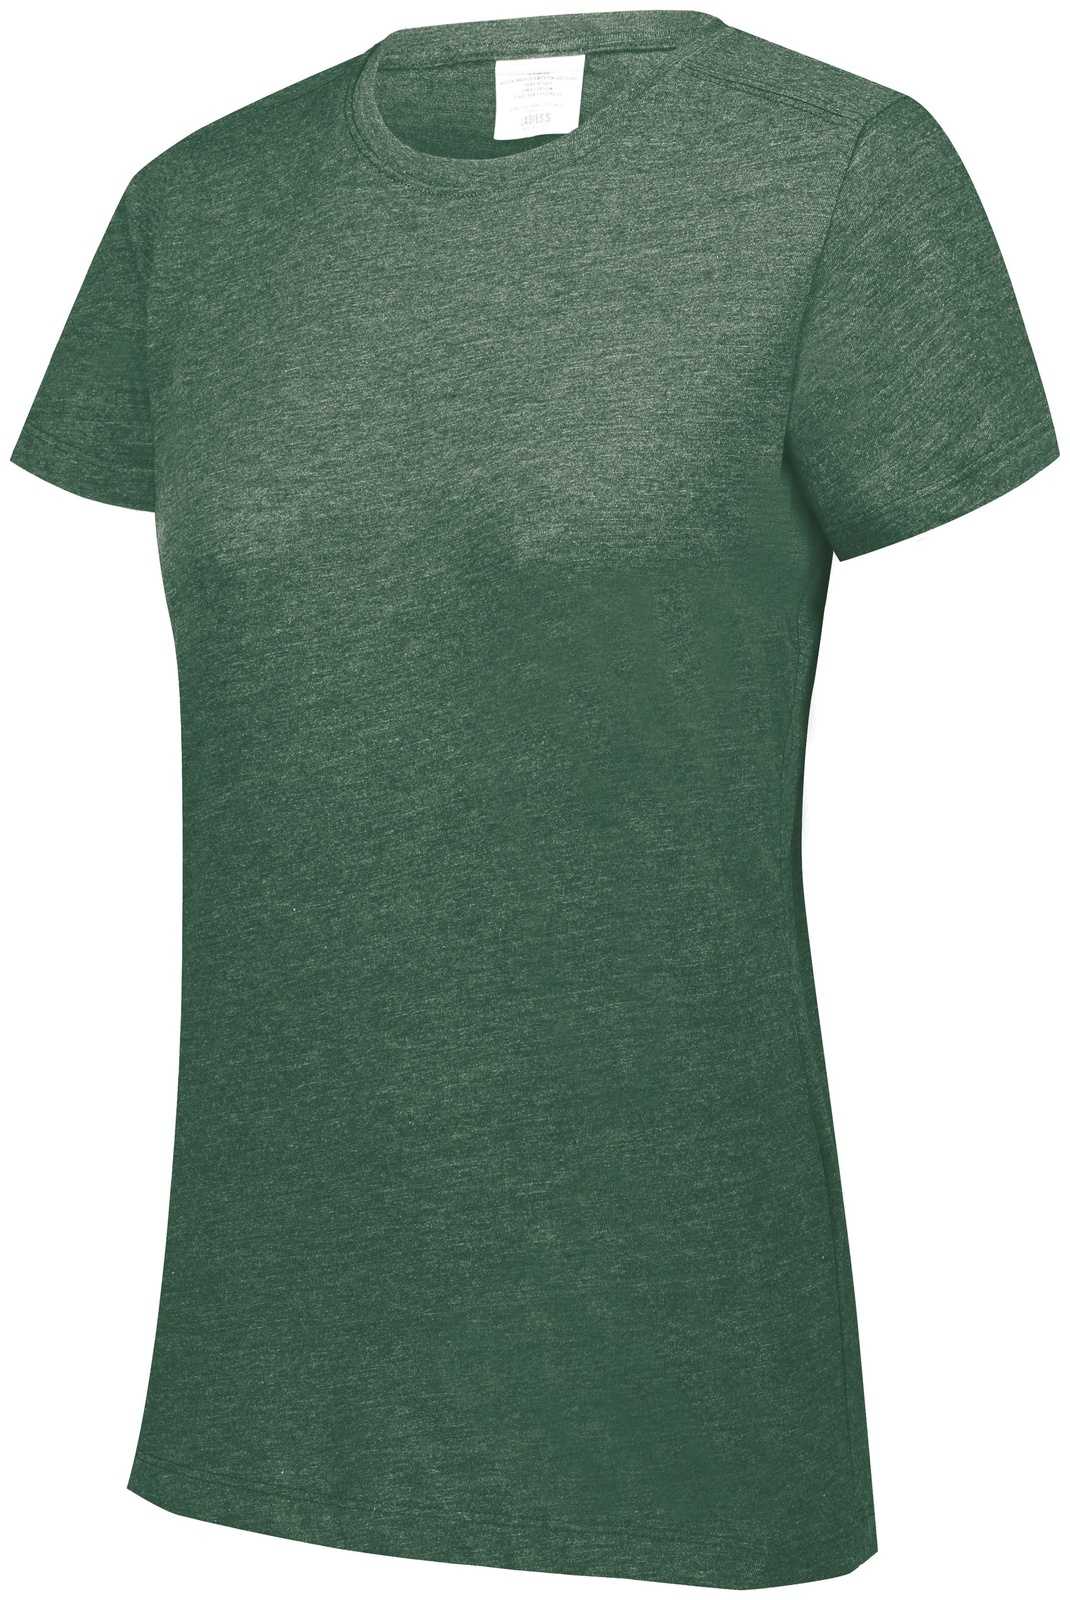 Augusta 3067 Ladies Tri-Blend T-Shirt - Dark Green Heather - HIT a Double